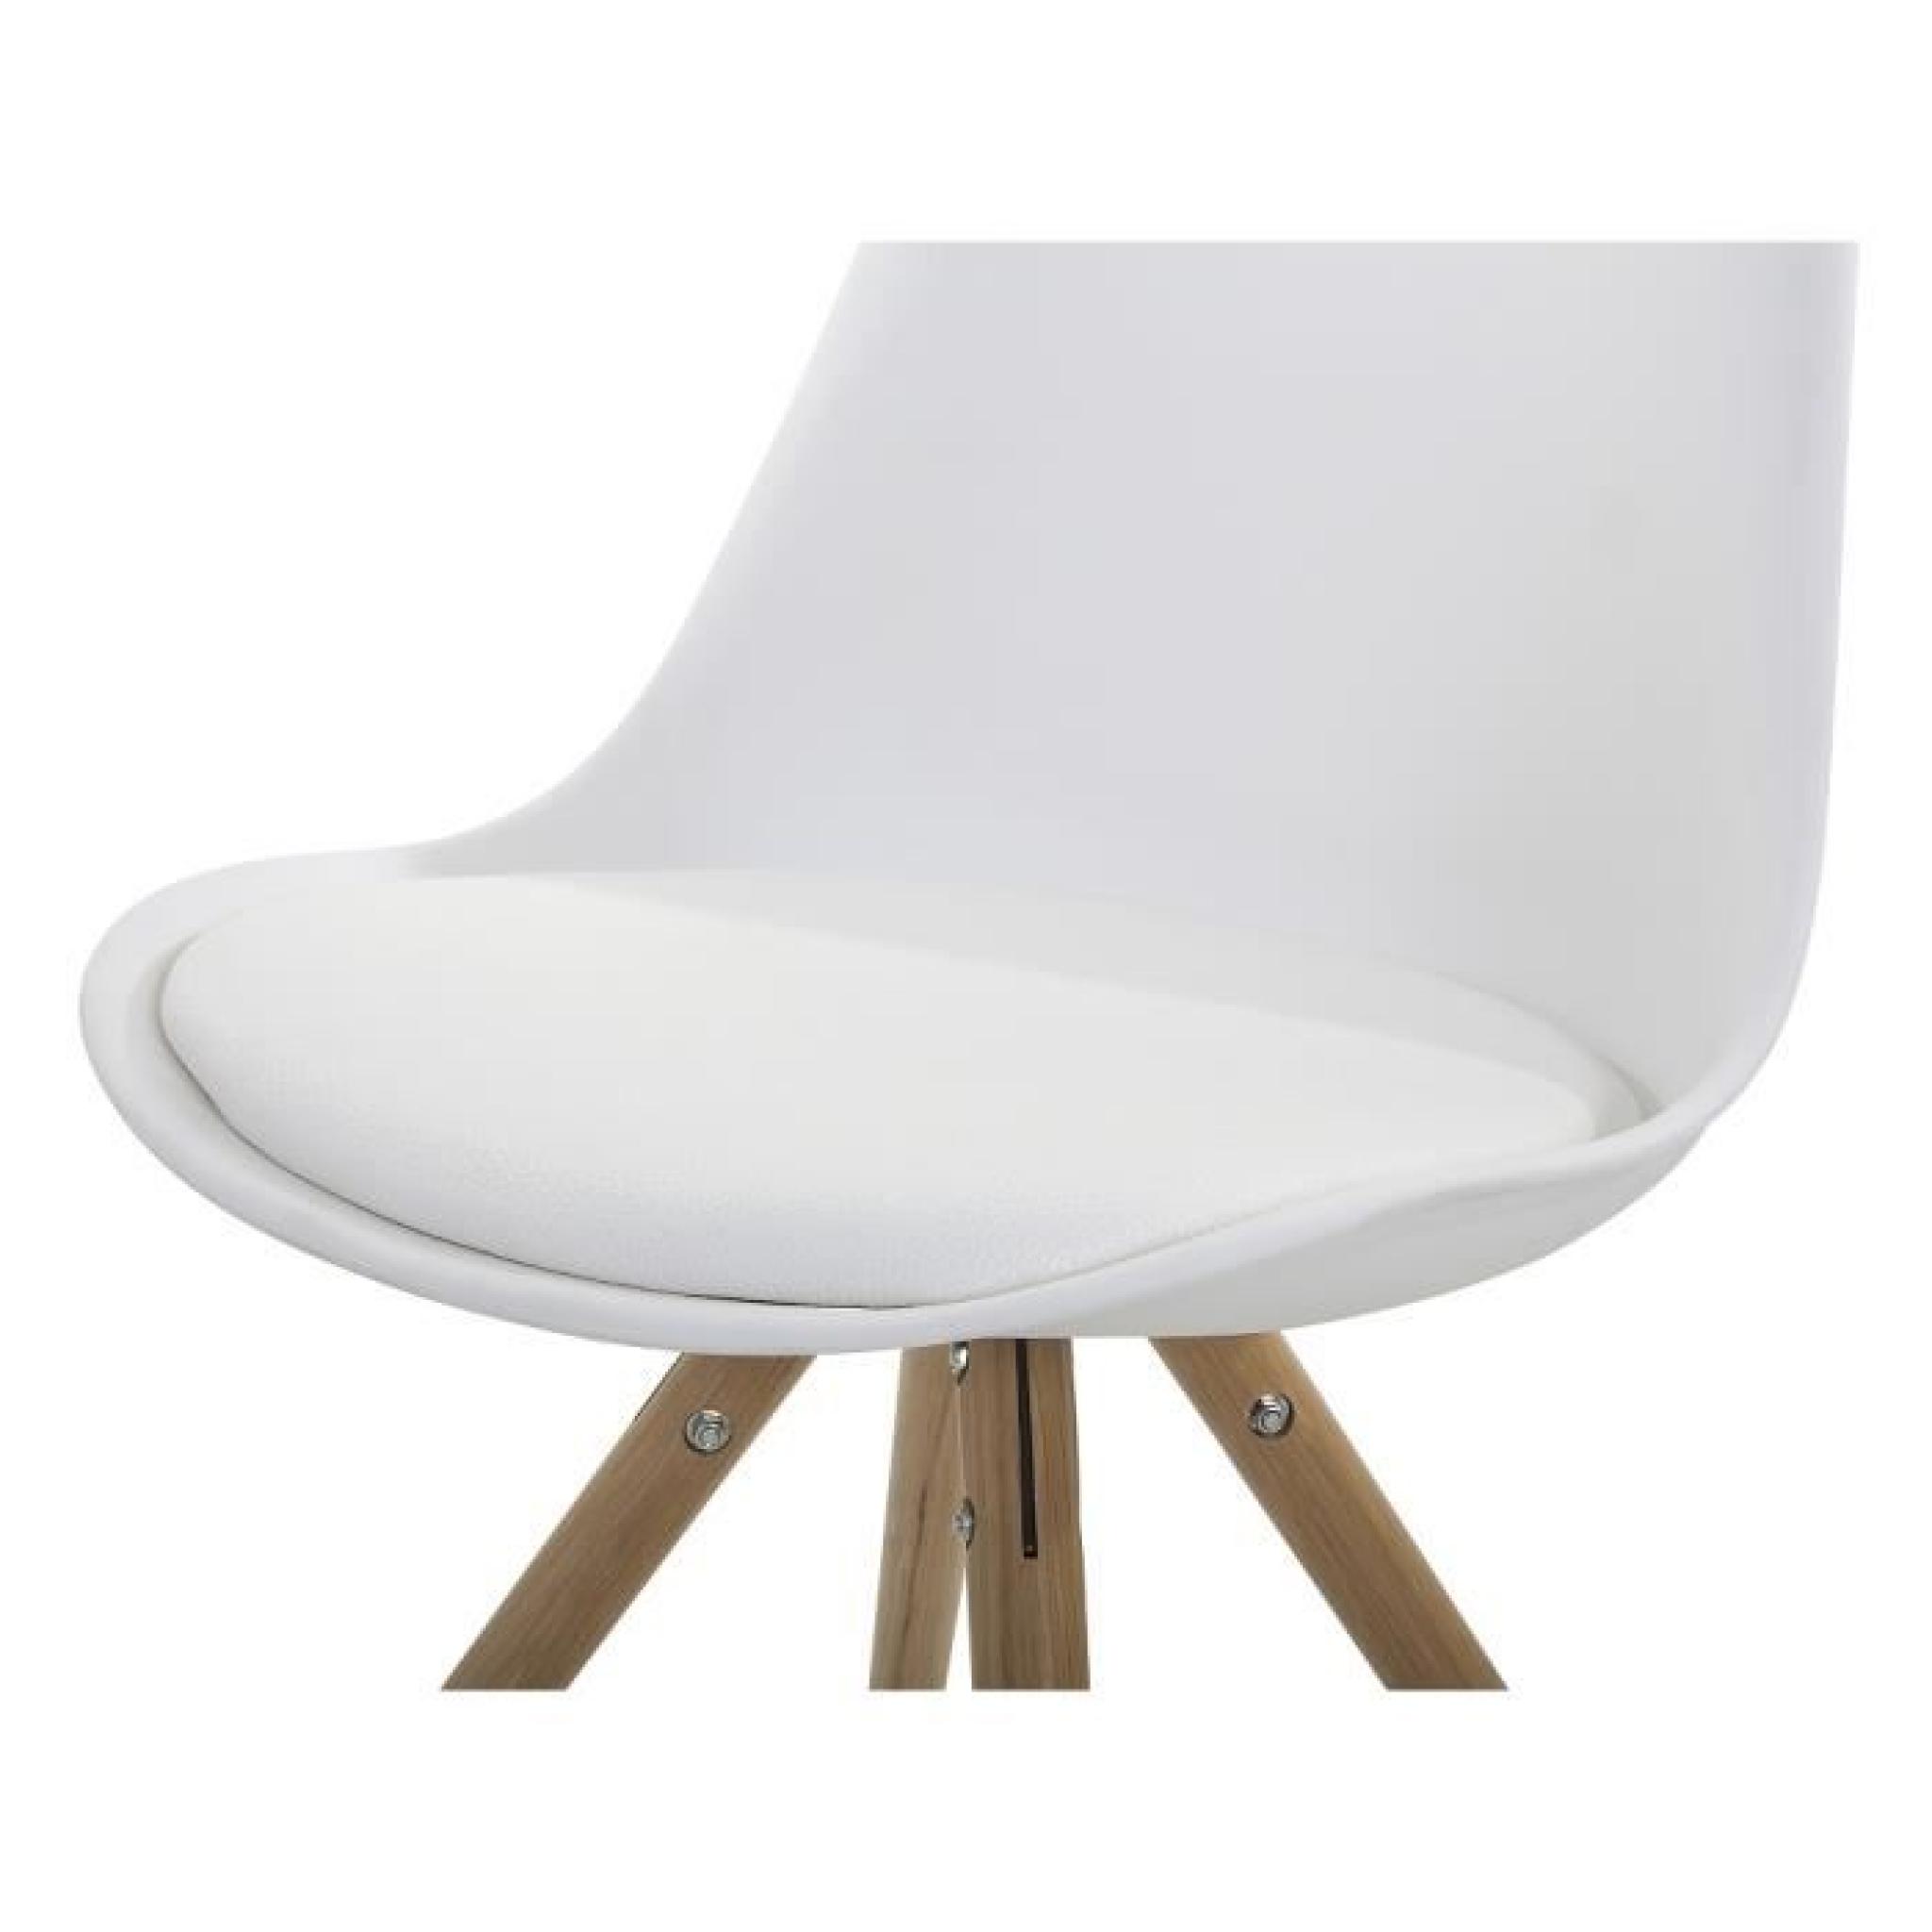 Chaise design - siège en plastique blanc - Moca pas cher